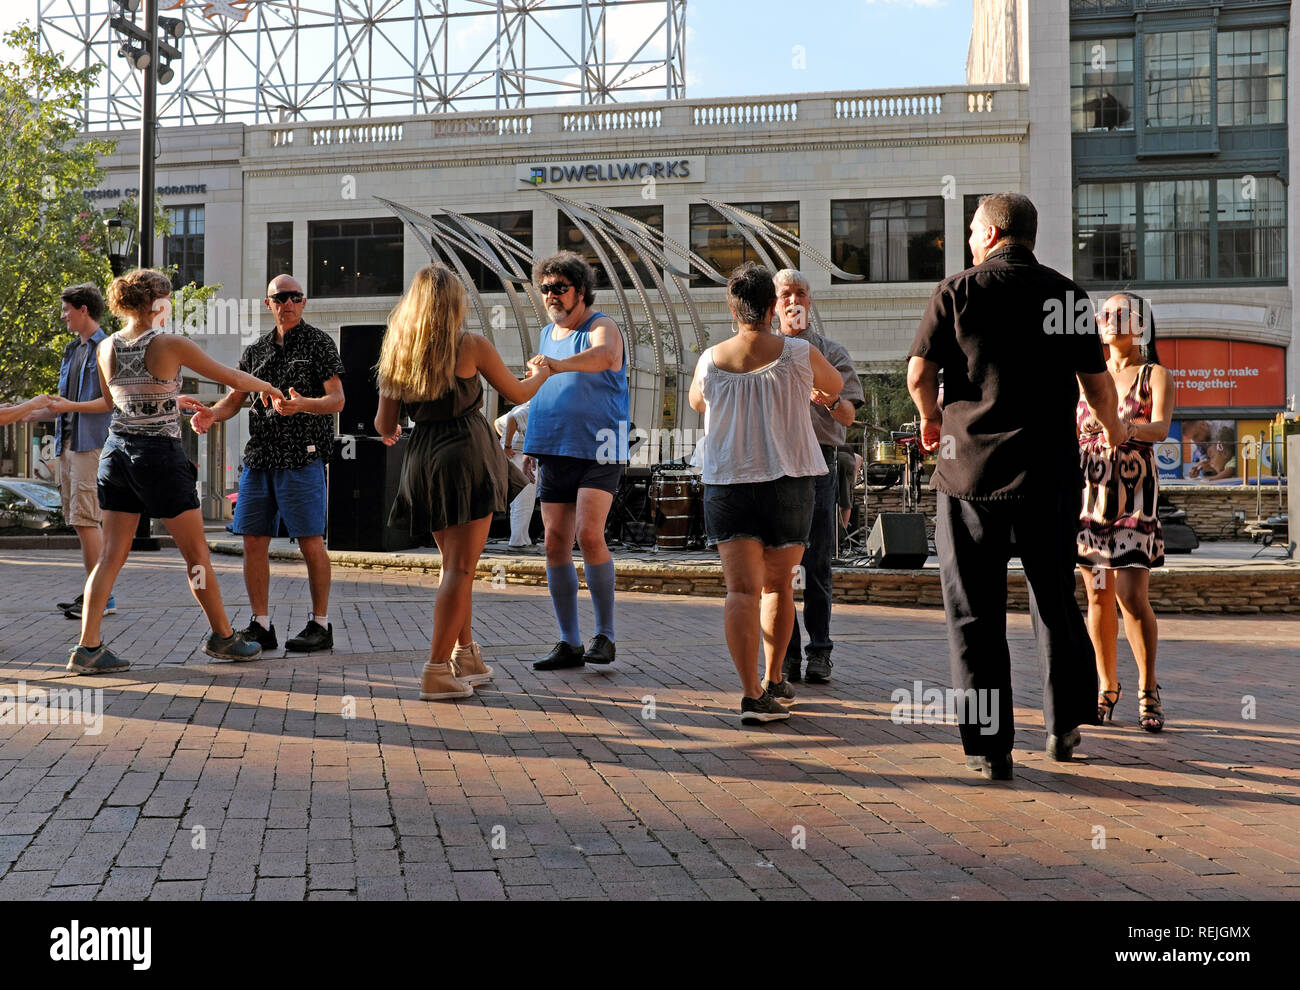 Menschen praktizieren Tanz bewegt sich auf uns Plaza während des Playhouse Square 'Dancing unter den Sternen" Sommer Programm in Cleveland, Ohio, USA. Stockfoto